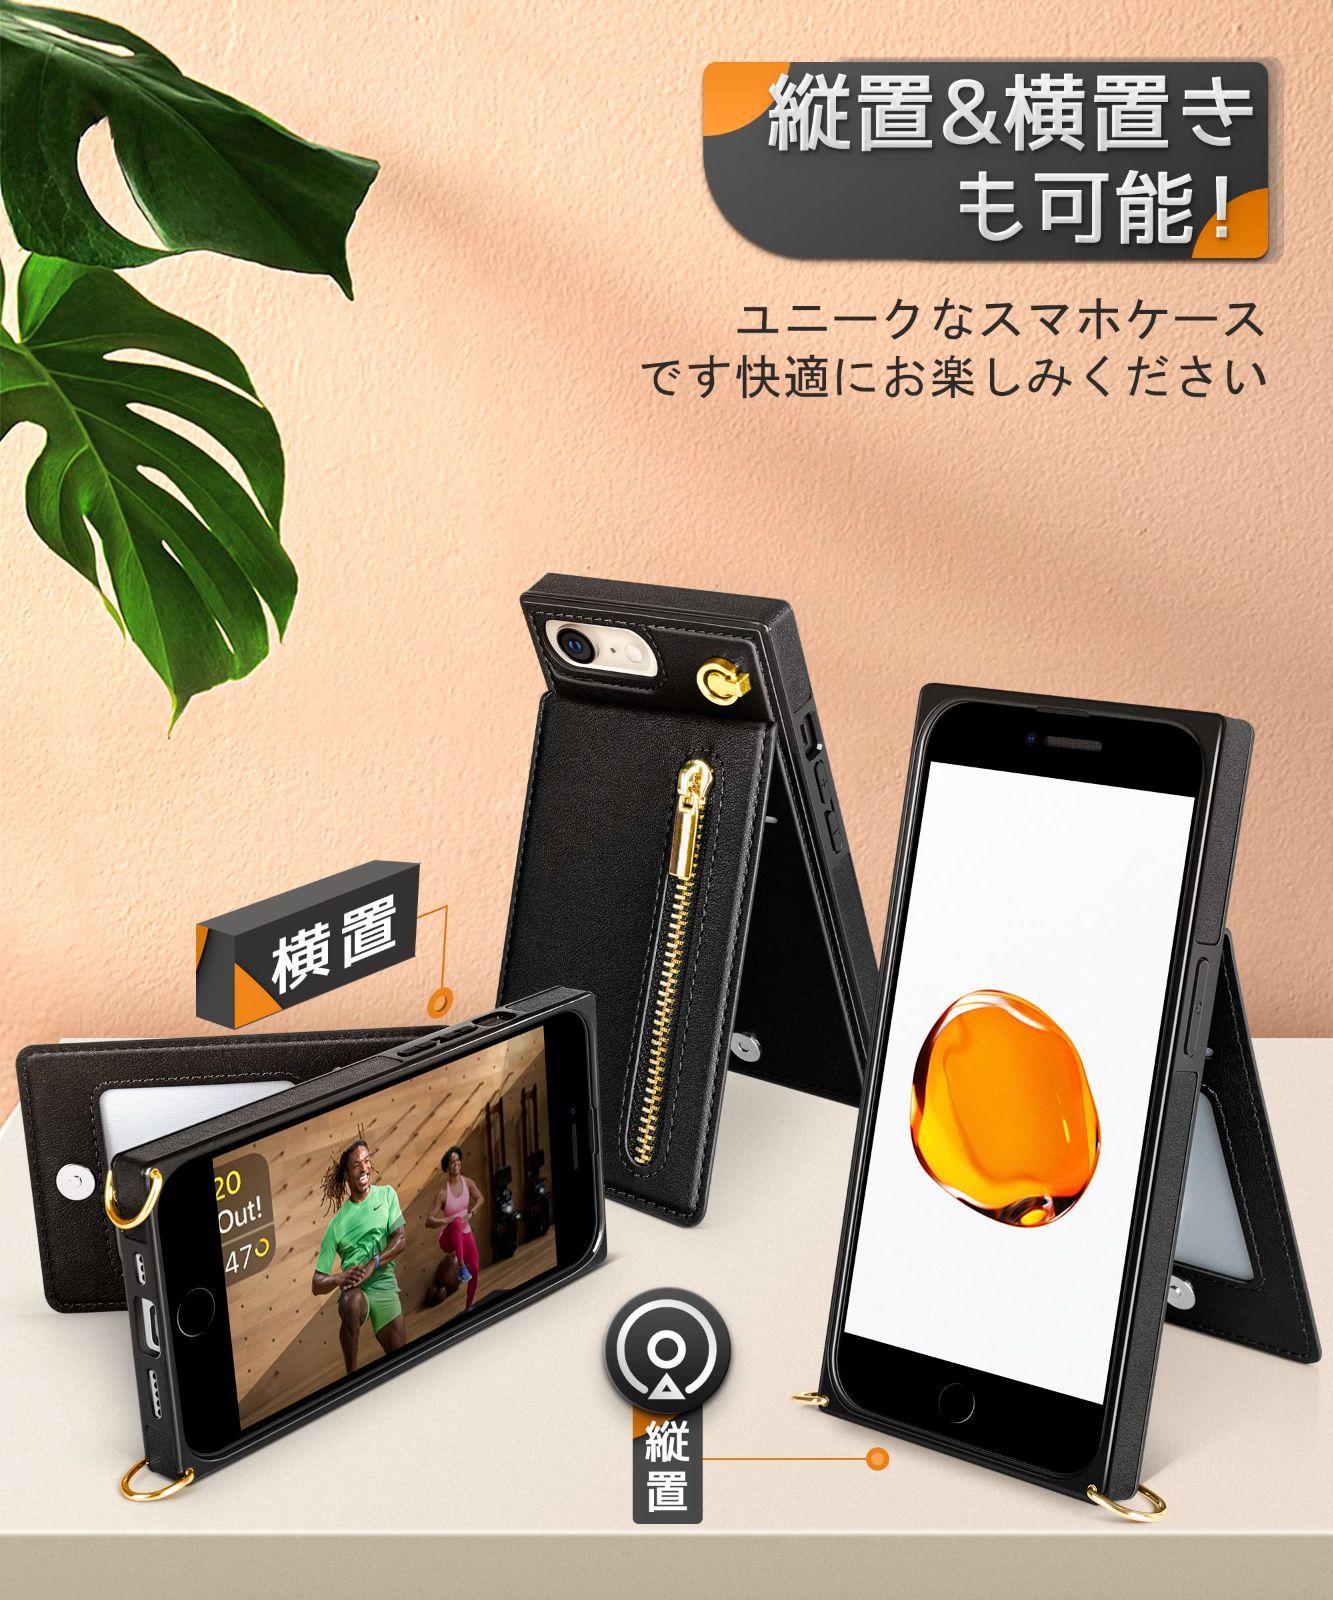 【色: ピンク】YIHARA iPhone 6/6S/7/8 iPhone SE